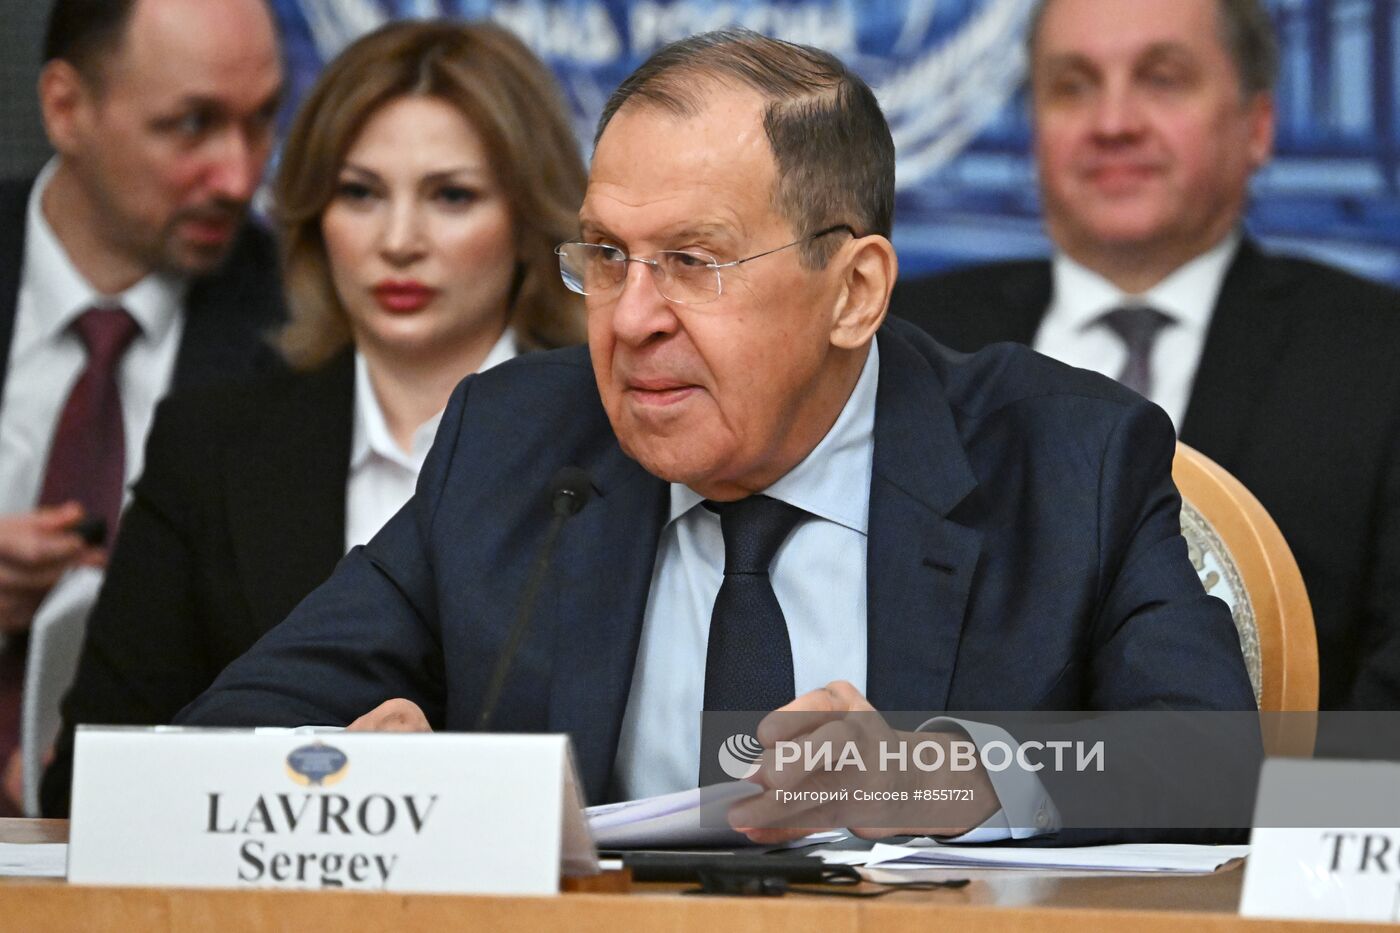 Глава МИД РФ С. Лавров принял участие в "круглом столе" по урегулированию украинского кризиса